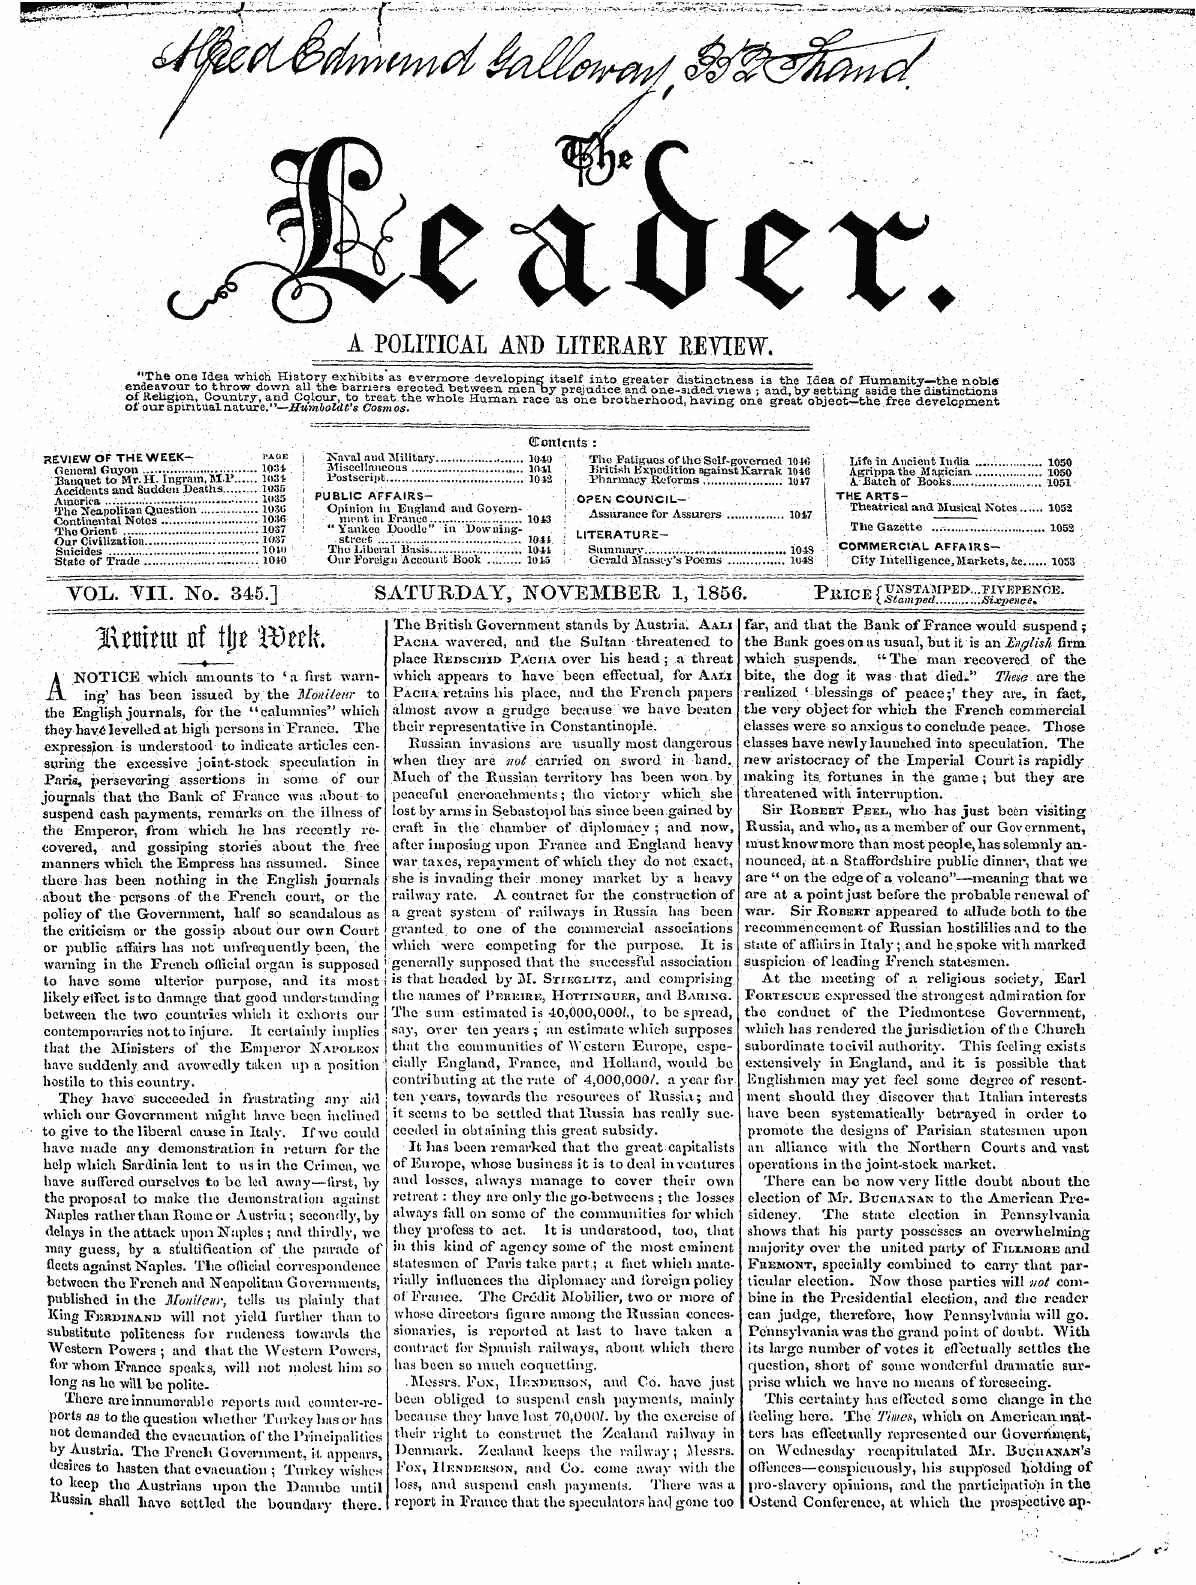 Leader (1850-1860): jS F Y, 2nd edition - ¦ ' -Rt ¦ ¦ '¦ "•• £ Li &Lt;Y*» V I ' ^I\ Jdt^Lu-'Hi'• Til^'Iv^K*' '